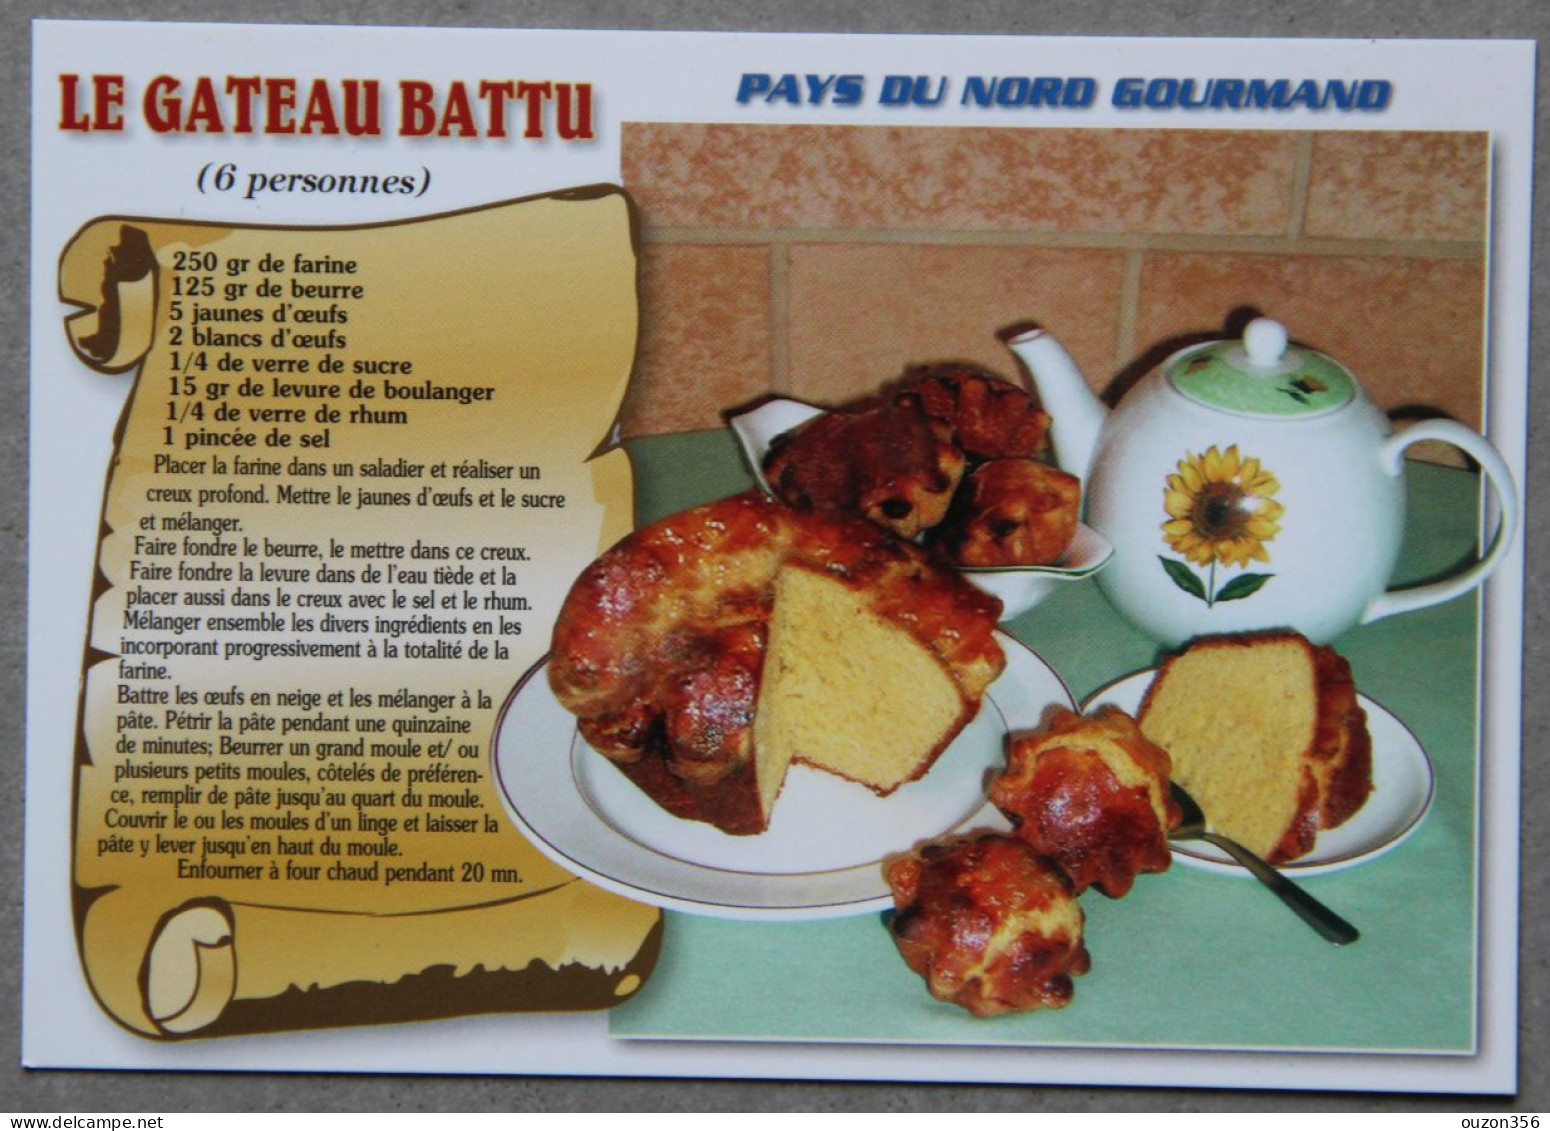 Recette Le Gateau Battu, Pays Du Nord Gourmand - Recettes (cuisine)